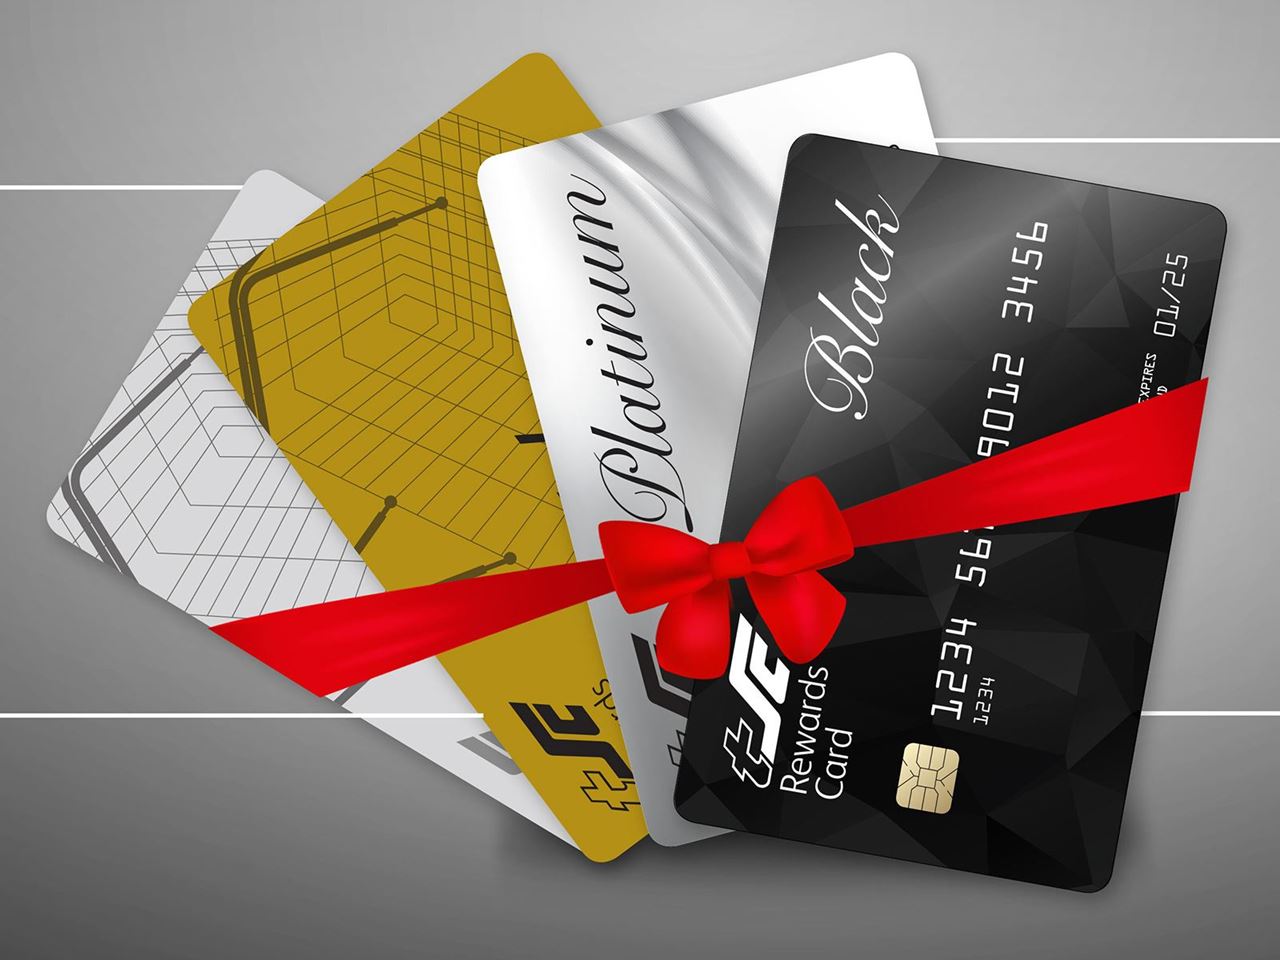 مركز سلطان يعيد إطلاق برنامج بطاقات المكافآت بجعلها أكثر كرماً وجاذبيةً